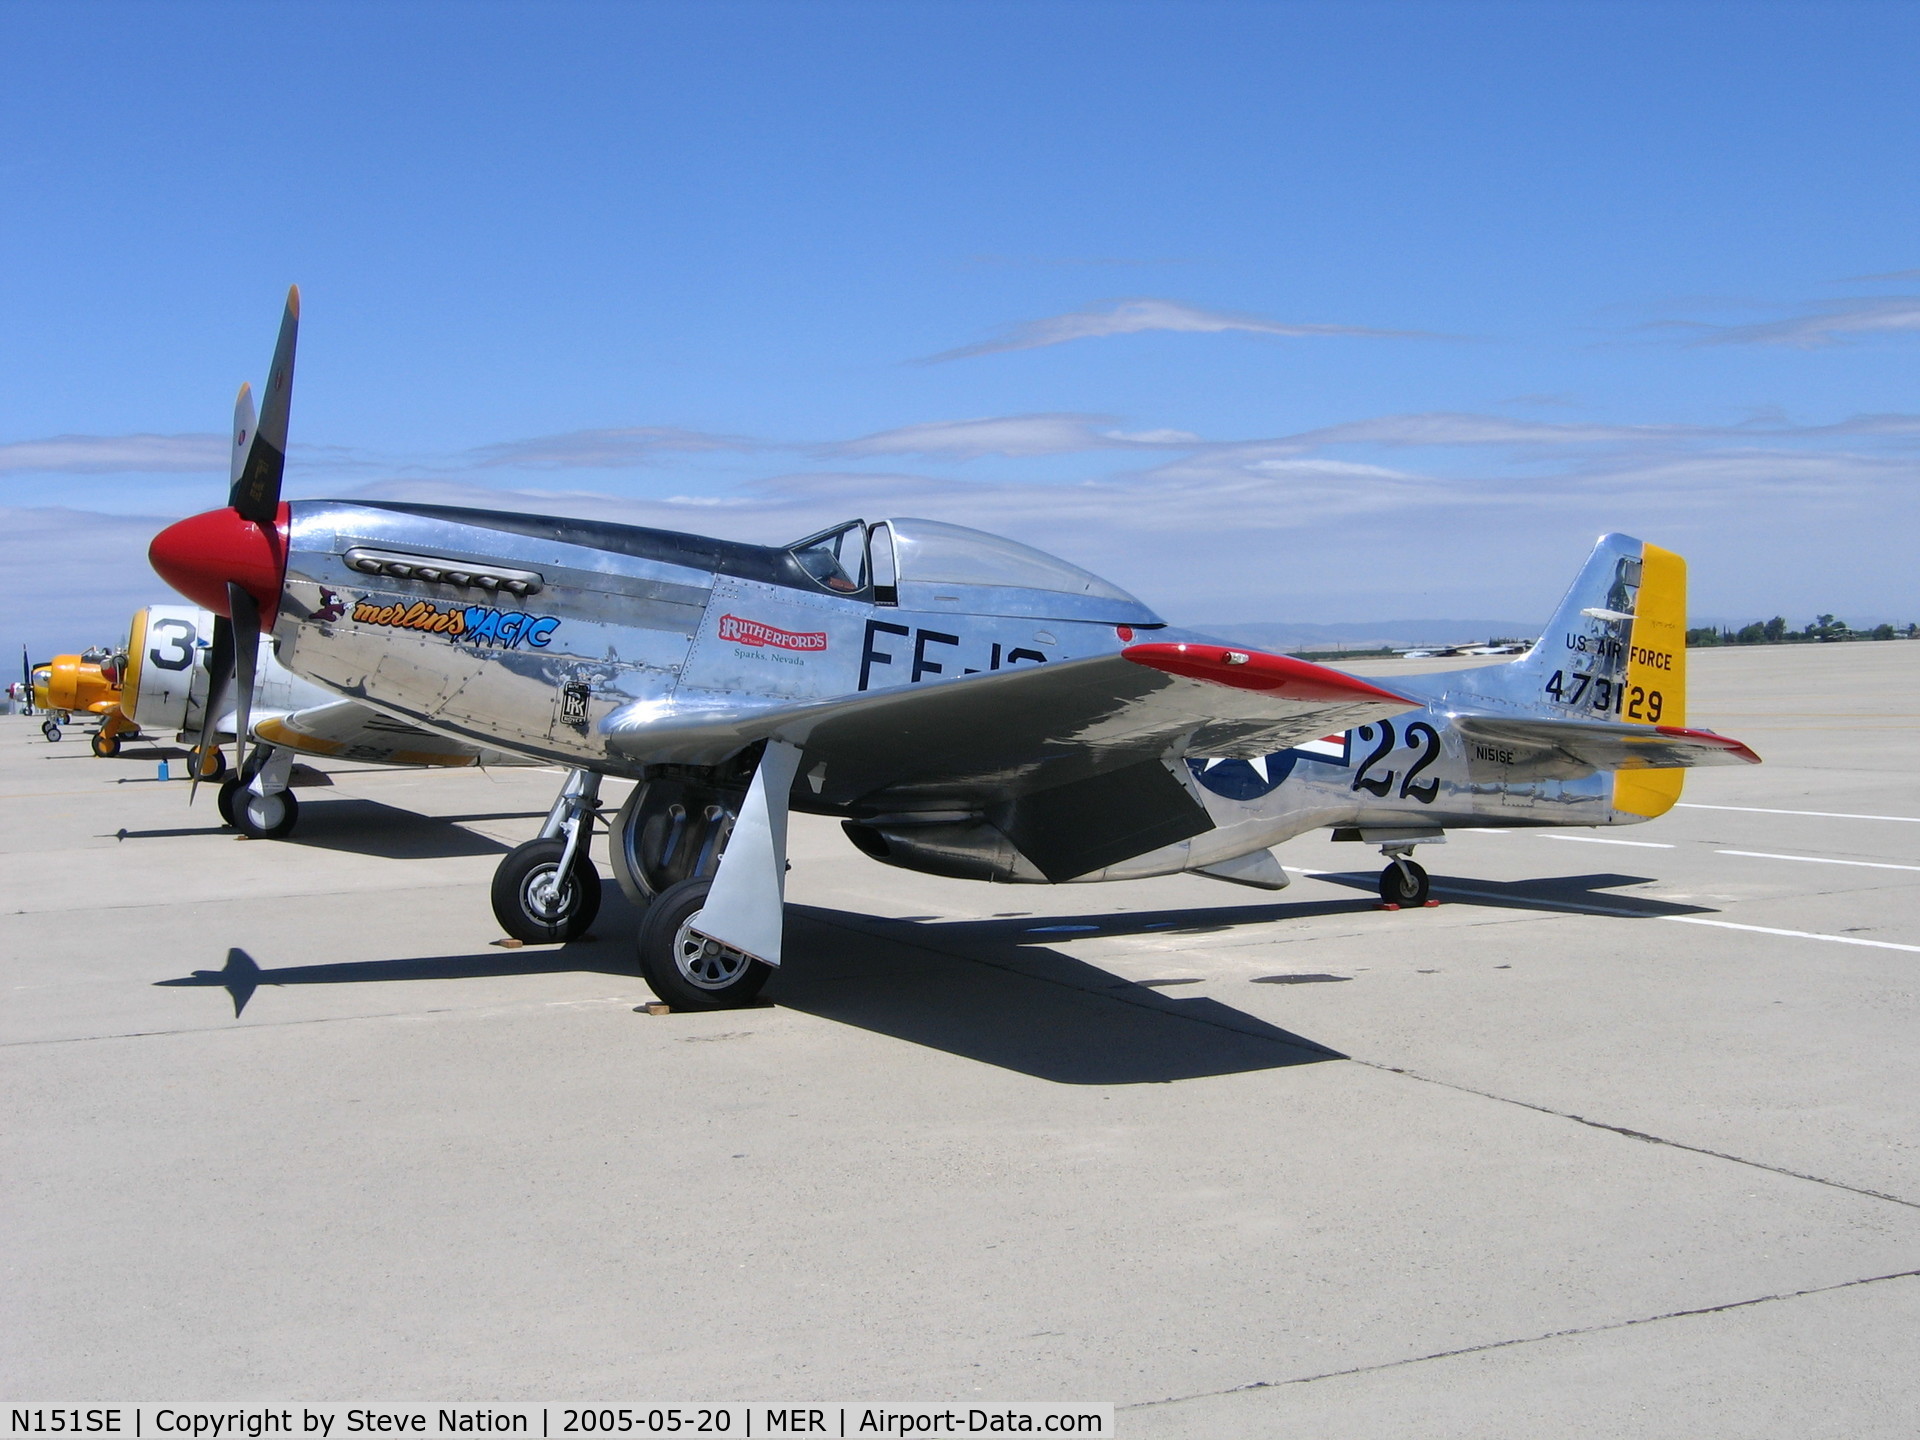 N151SE, 1944 North American P-51D Mustang C/N 122-39588 (44-73129), P-51D 44-73129 FF-129 Race #22 